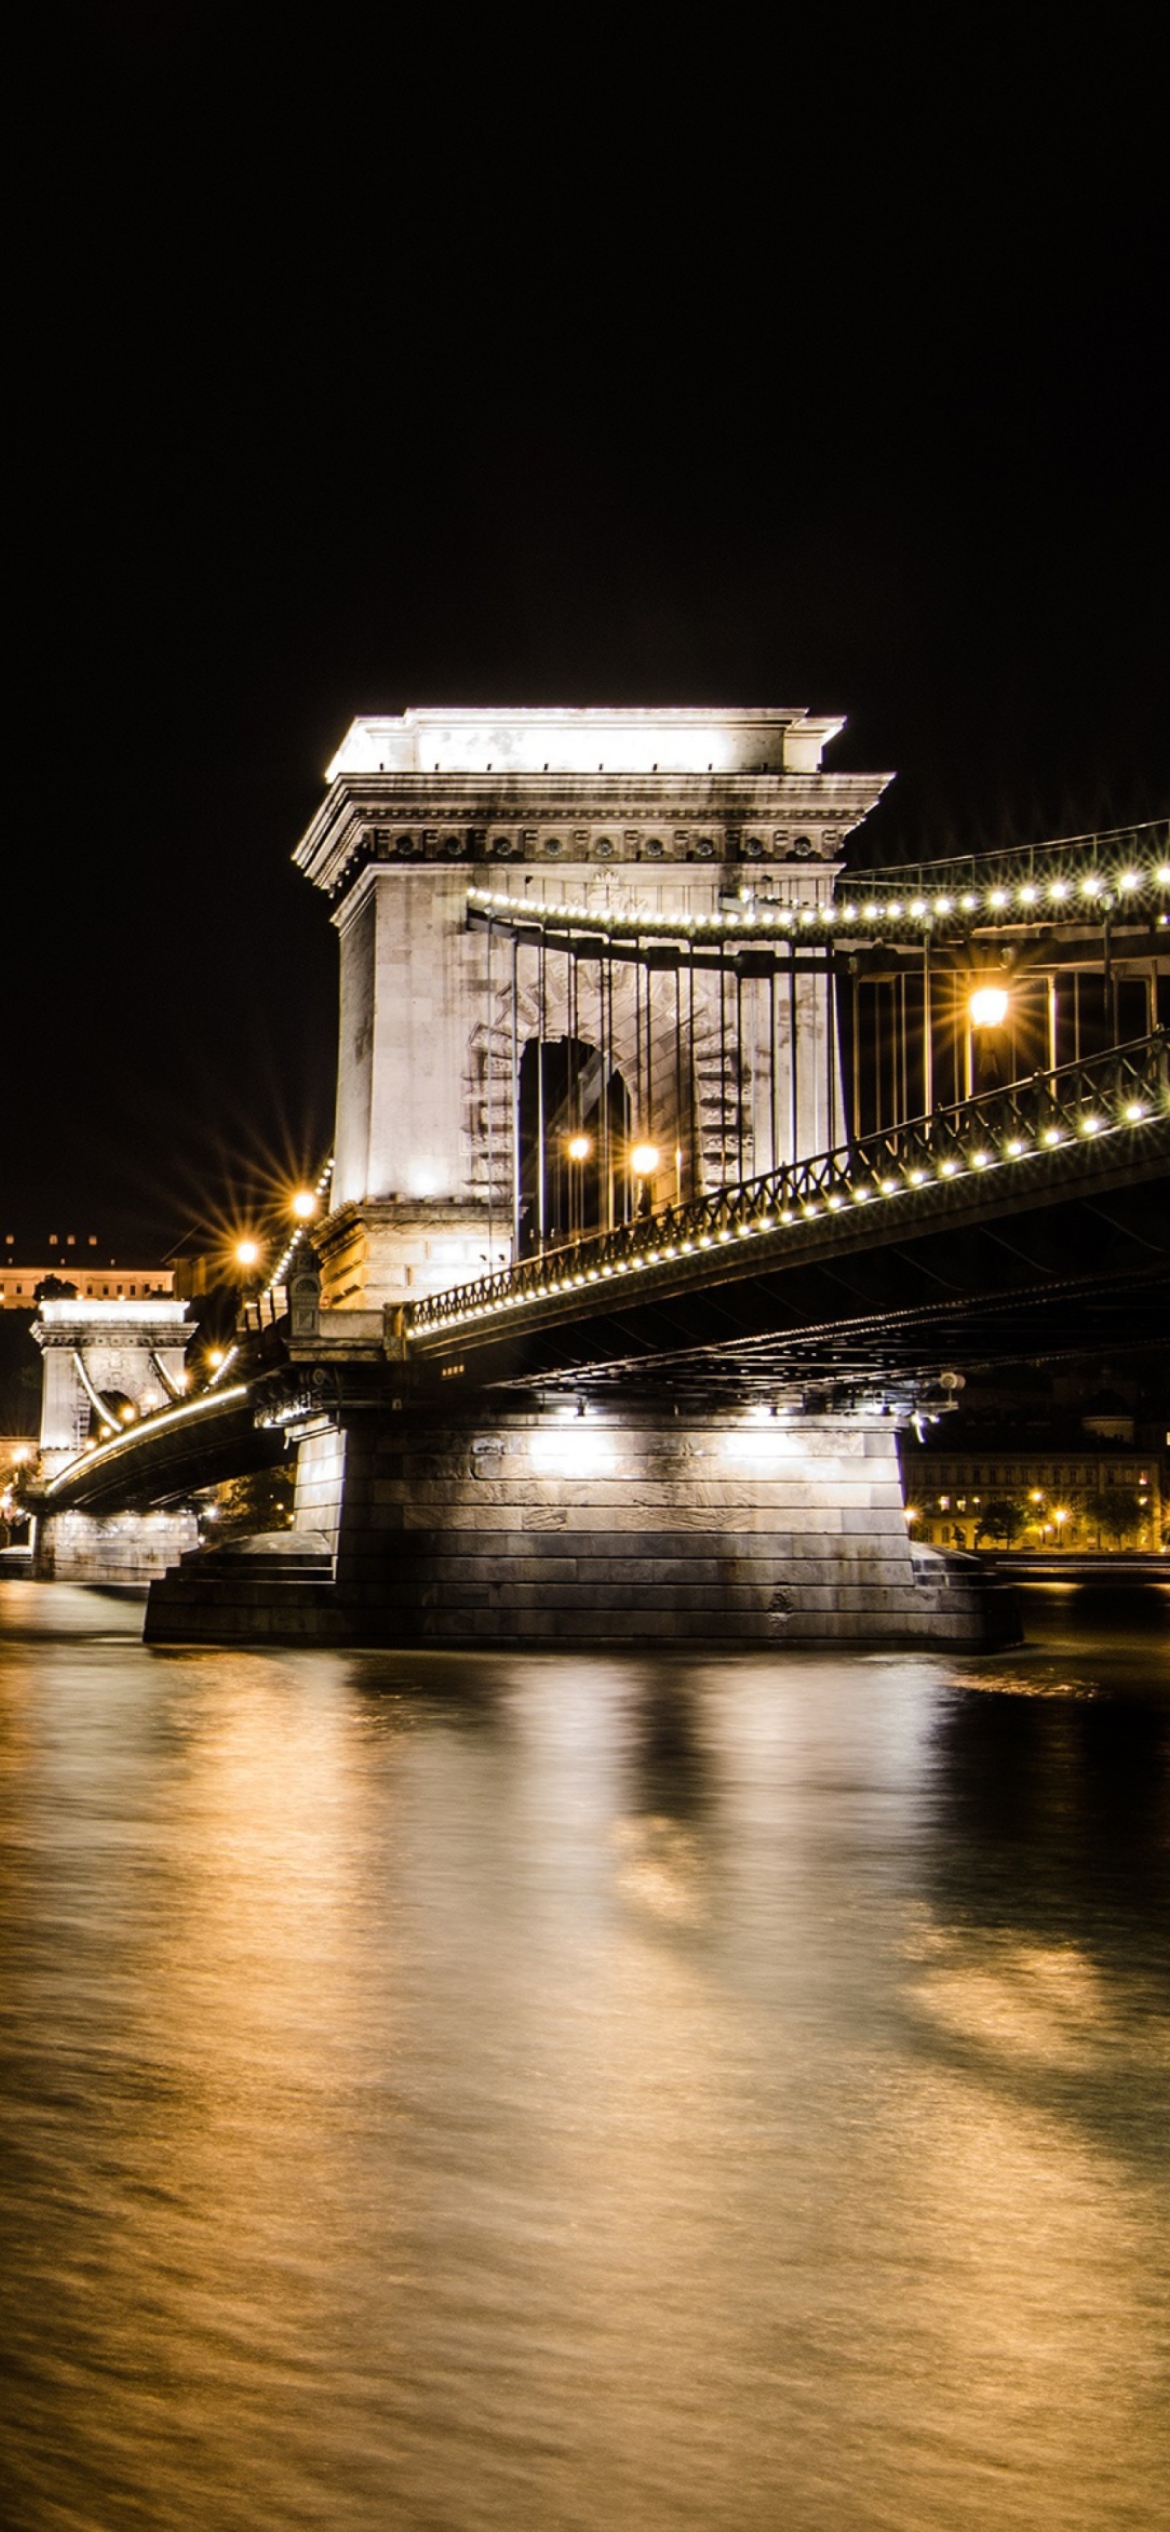 Chain Bridge at Night in Budapest Hungary screenshot #1 1170x2532